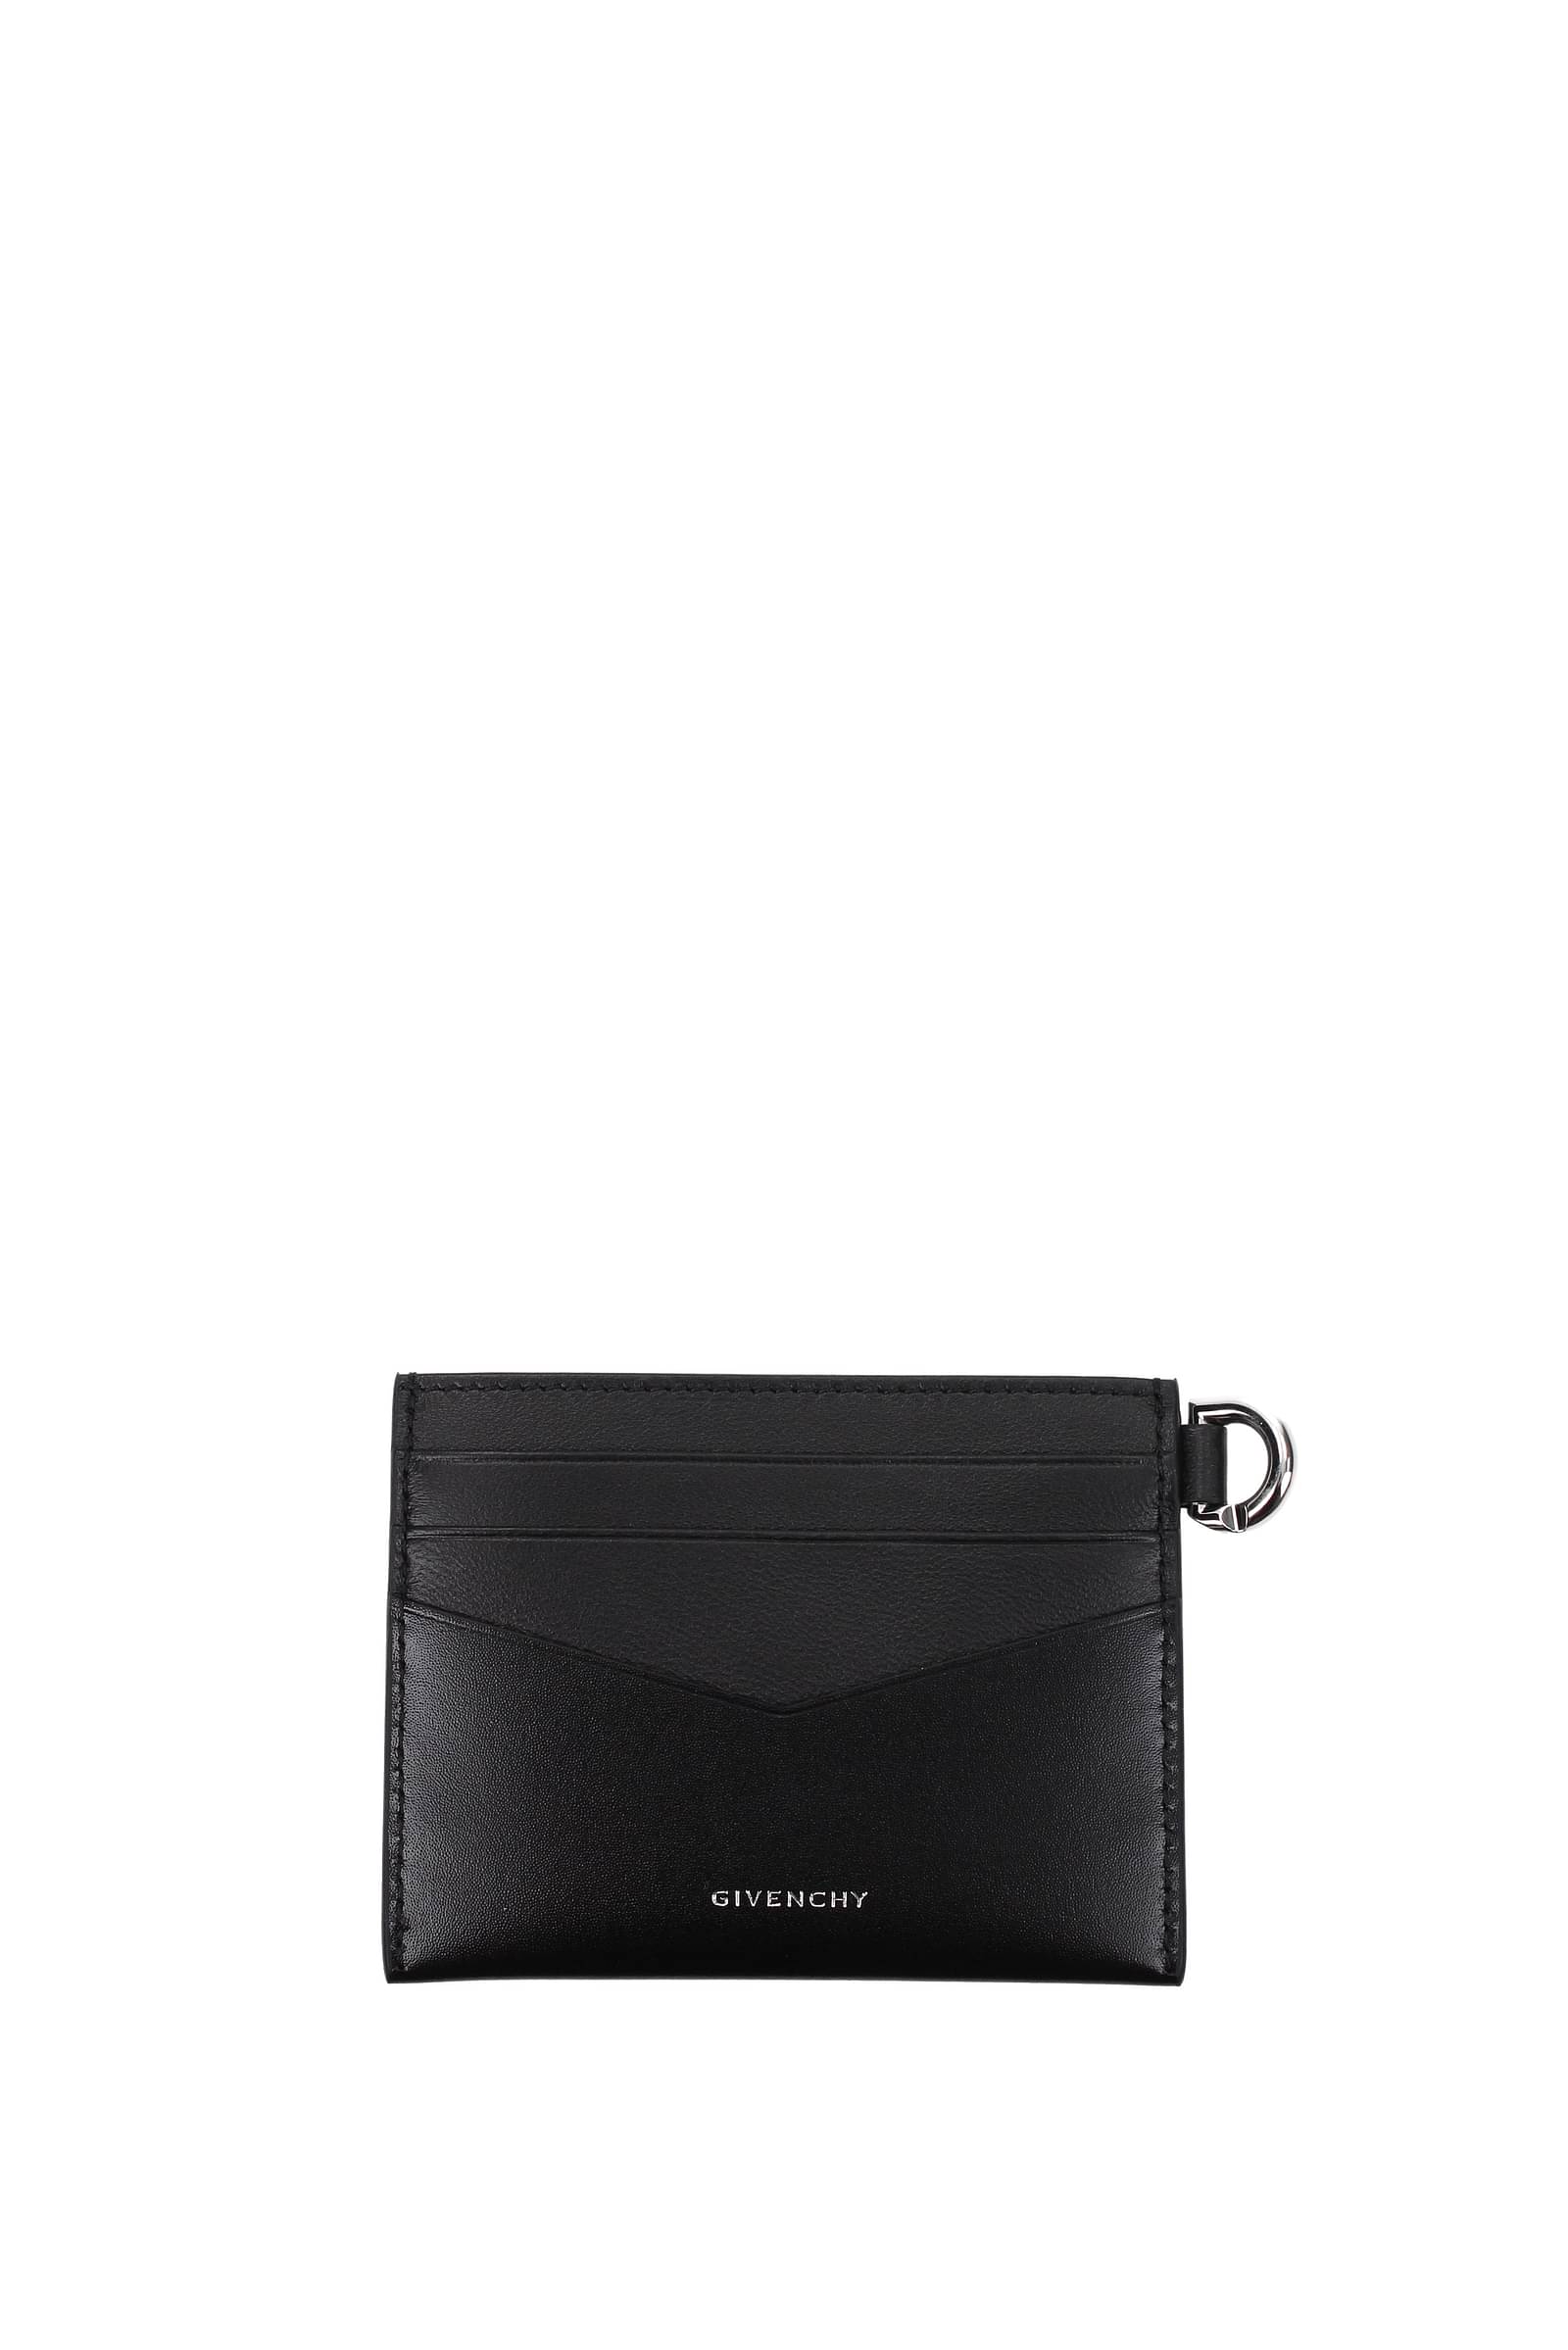 Givenchy Leder Leder aktentasche in Schwarz für Herren Herren Taschen Aktentaschen und Laptoptaschen 